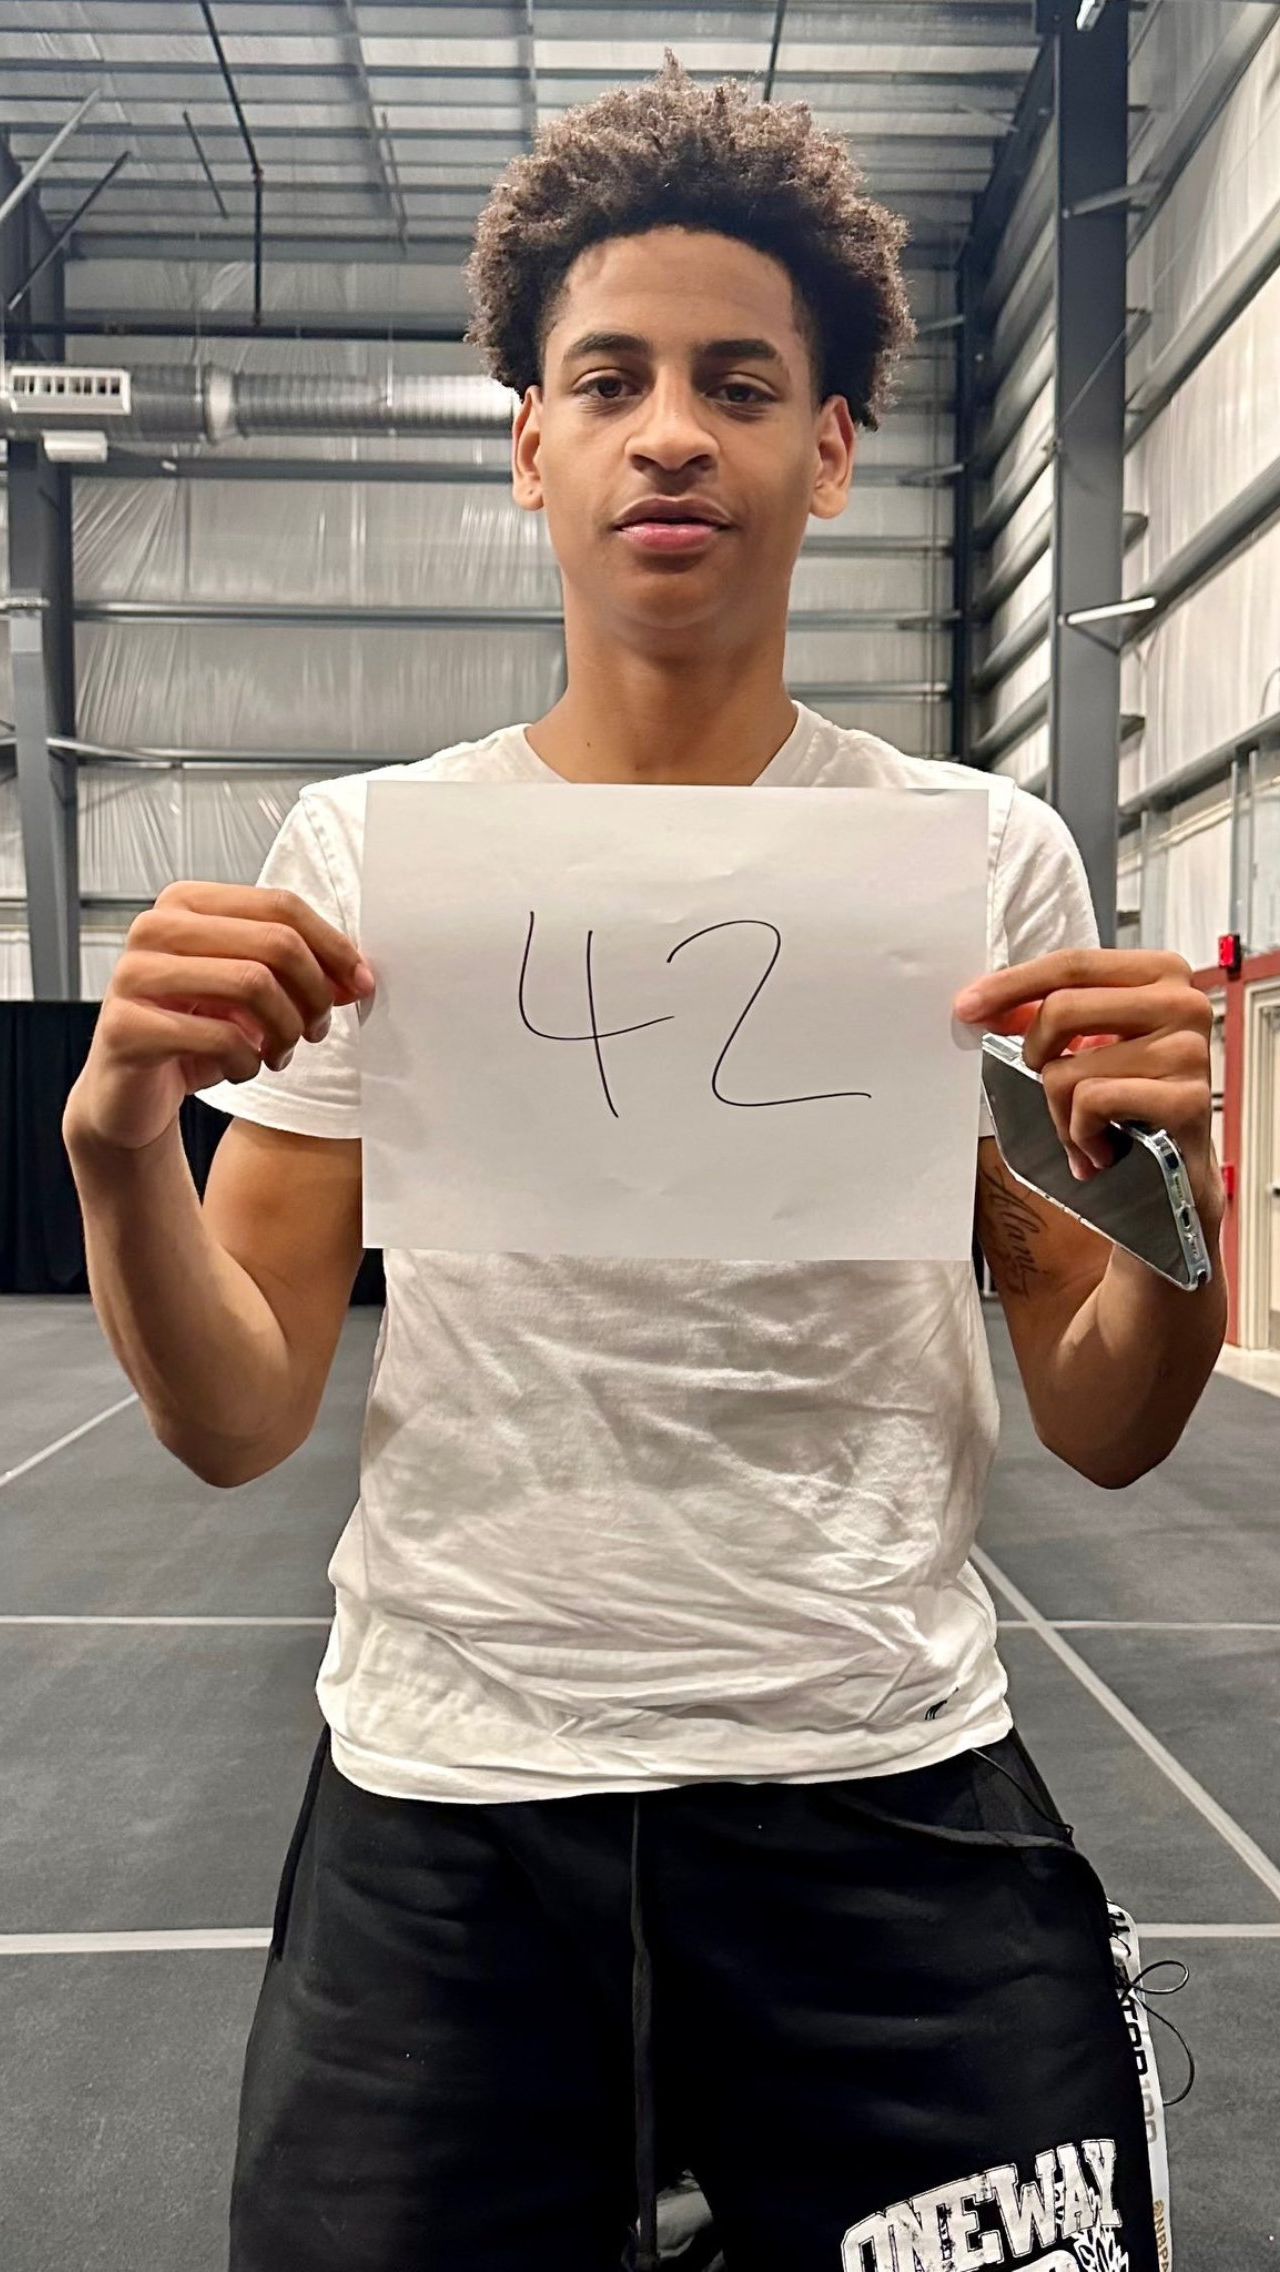 Кияну Энтони, сыну 10-кратного участника Матча всех звёзд НБА Кармело Энтони, сейчас 17 лет. Недавно он принял участие в матче в рамках NBPA Top 100 Camp, во время которого набрал солидные 42 очка.